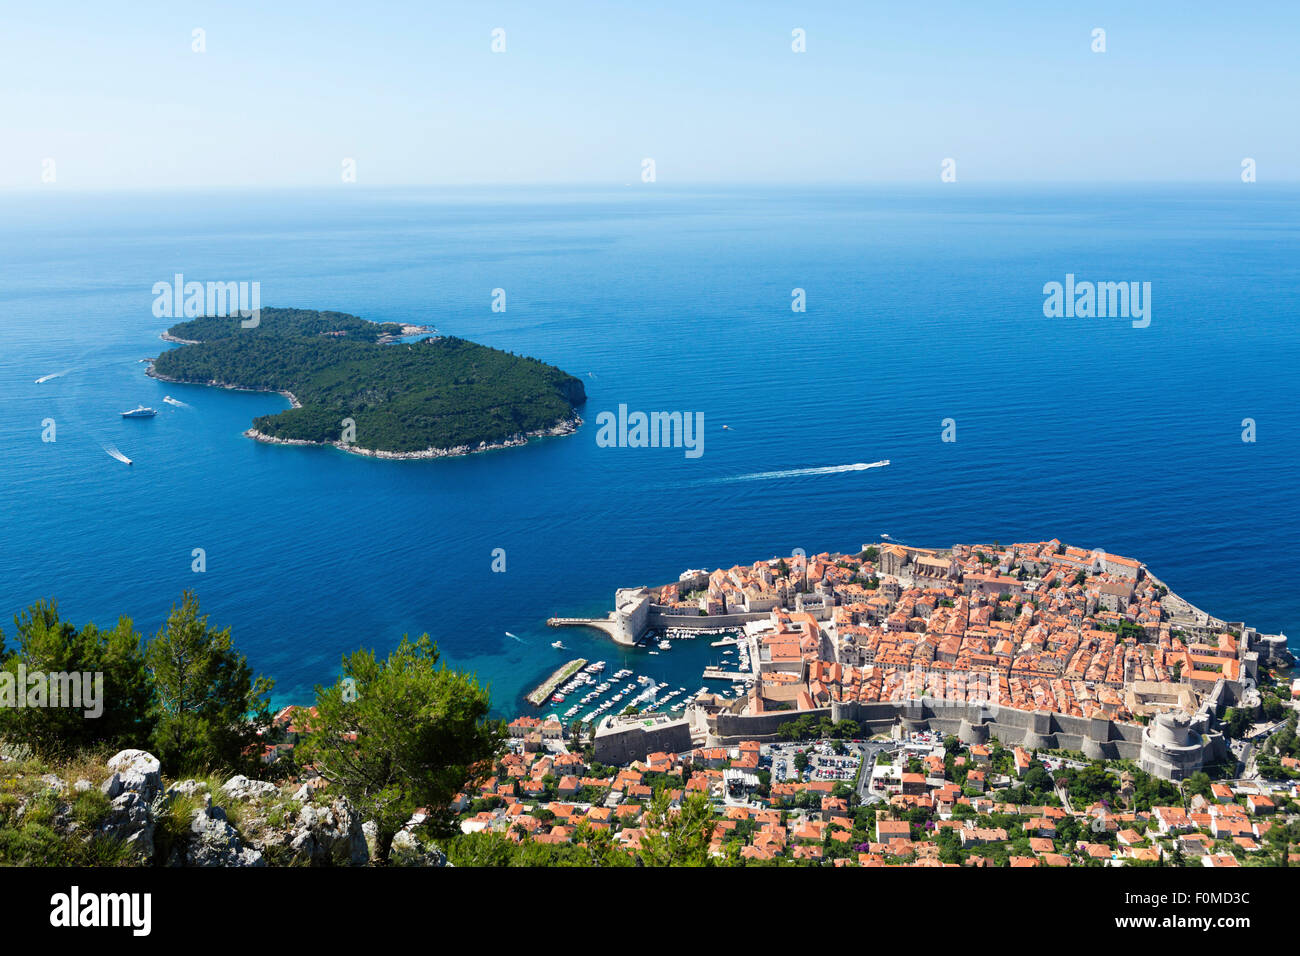 Visión de la ciudad de Dubrovnik - Ubicación de Desembarco del Rey en el Juego de Tronos películas Foto de stock